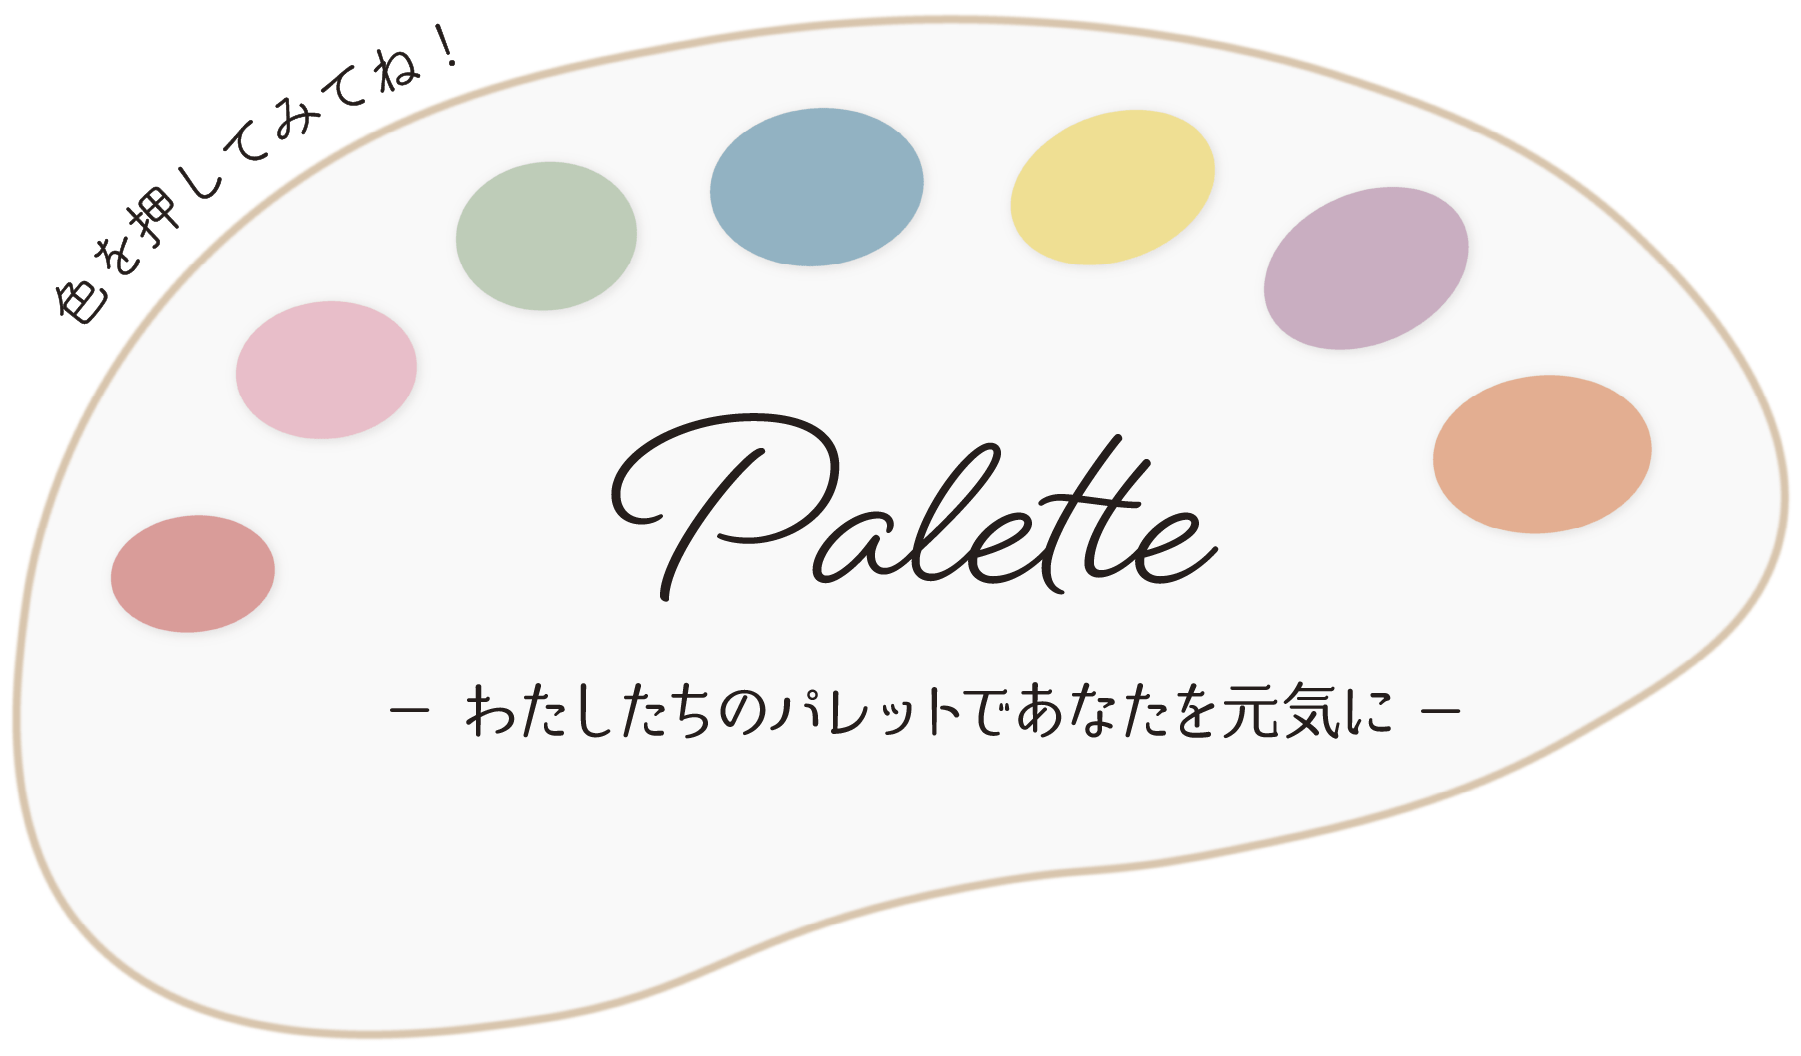 株式会社Paletteの企業イメージ